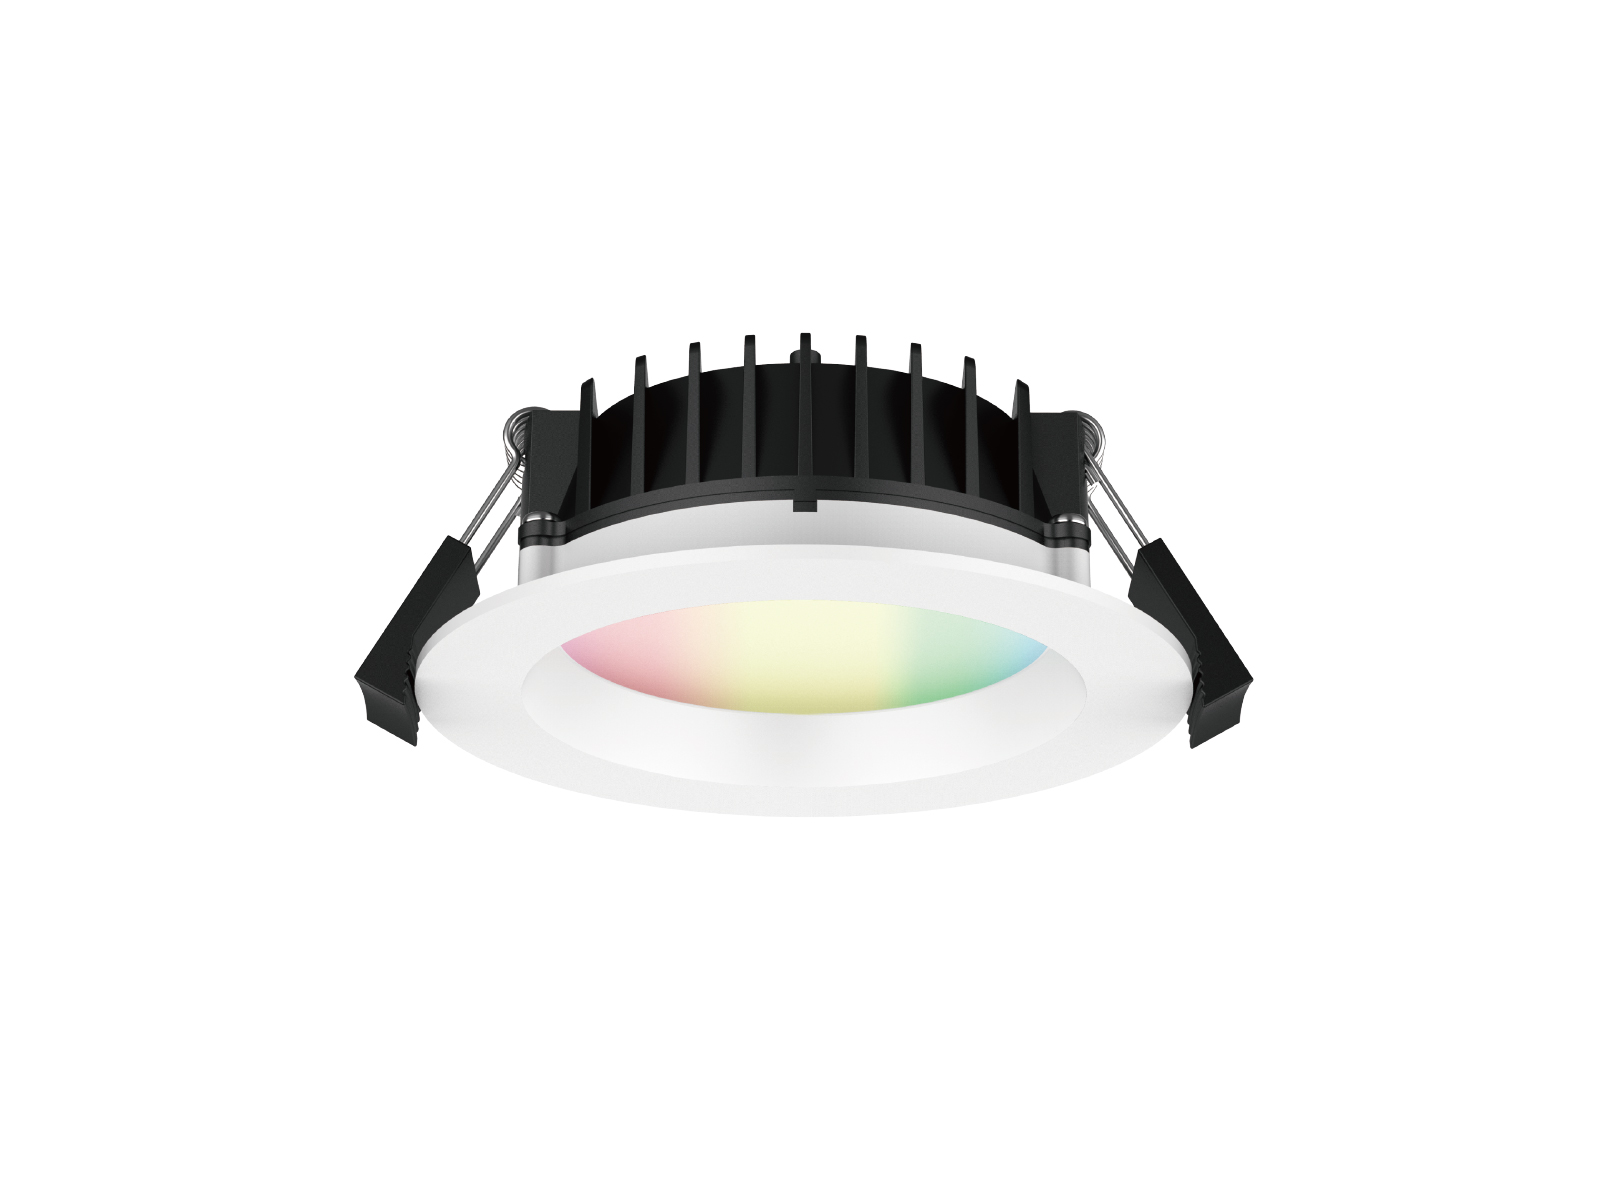 DL141A-W3/B3 High Lumen SMD LED Downlight